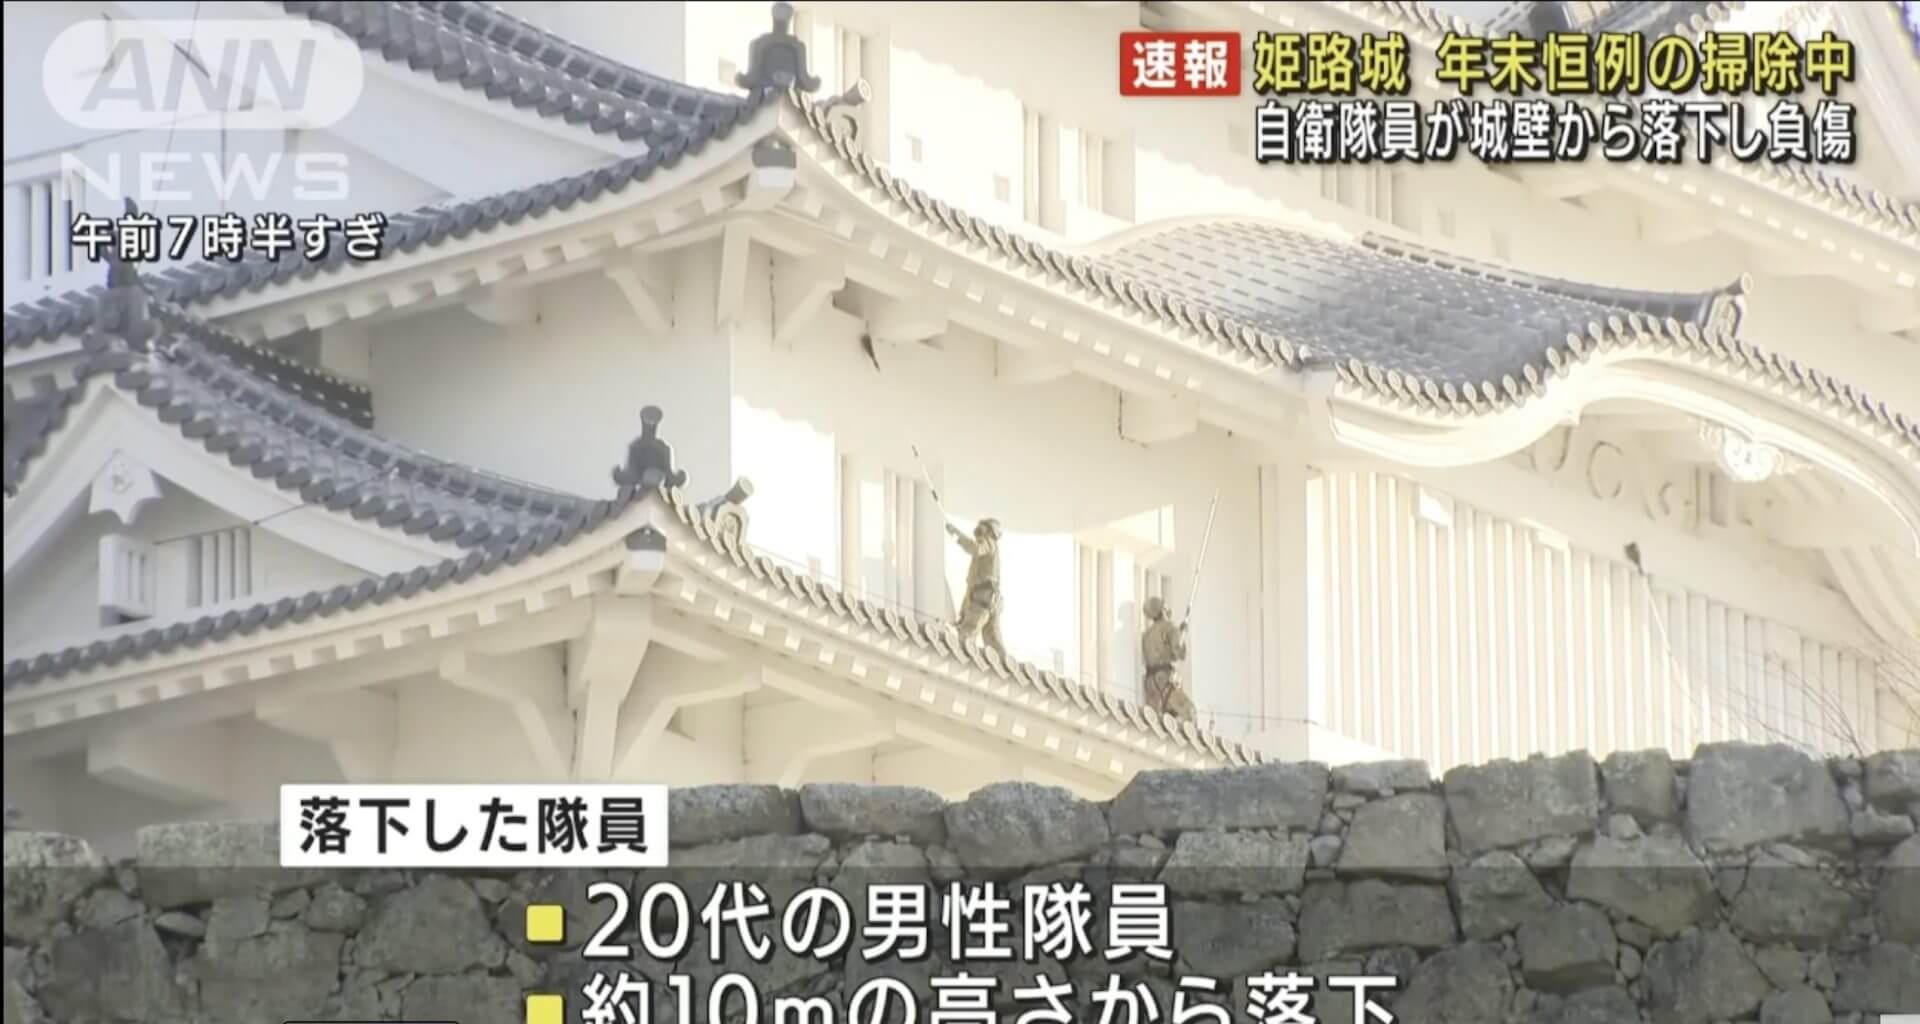 Membro da Forças de Autodefesa do Japão cai do castelo de Himeji, durante atividades de limpeza